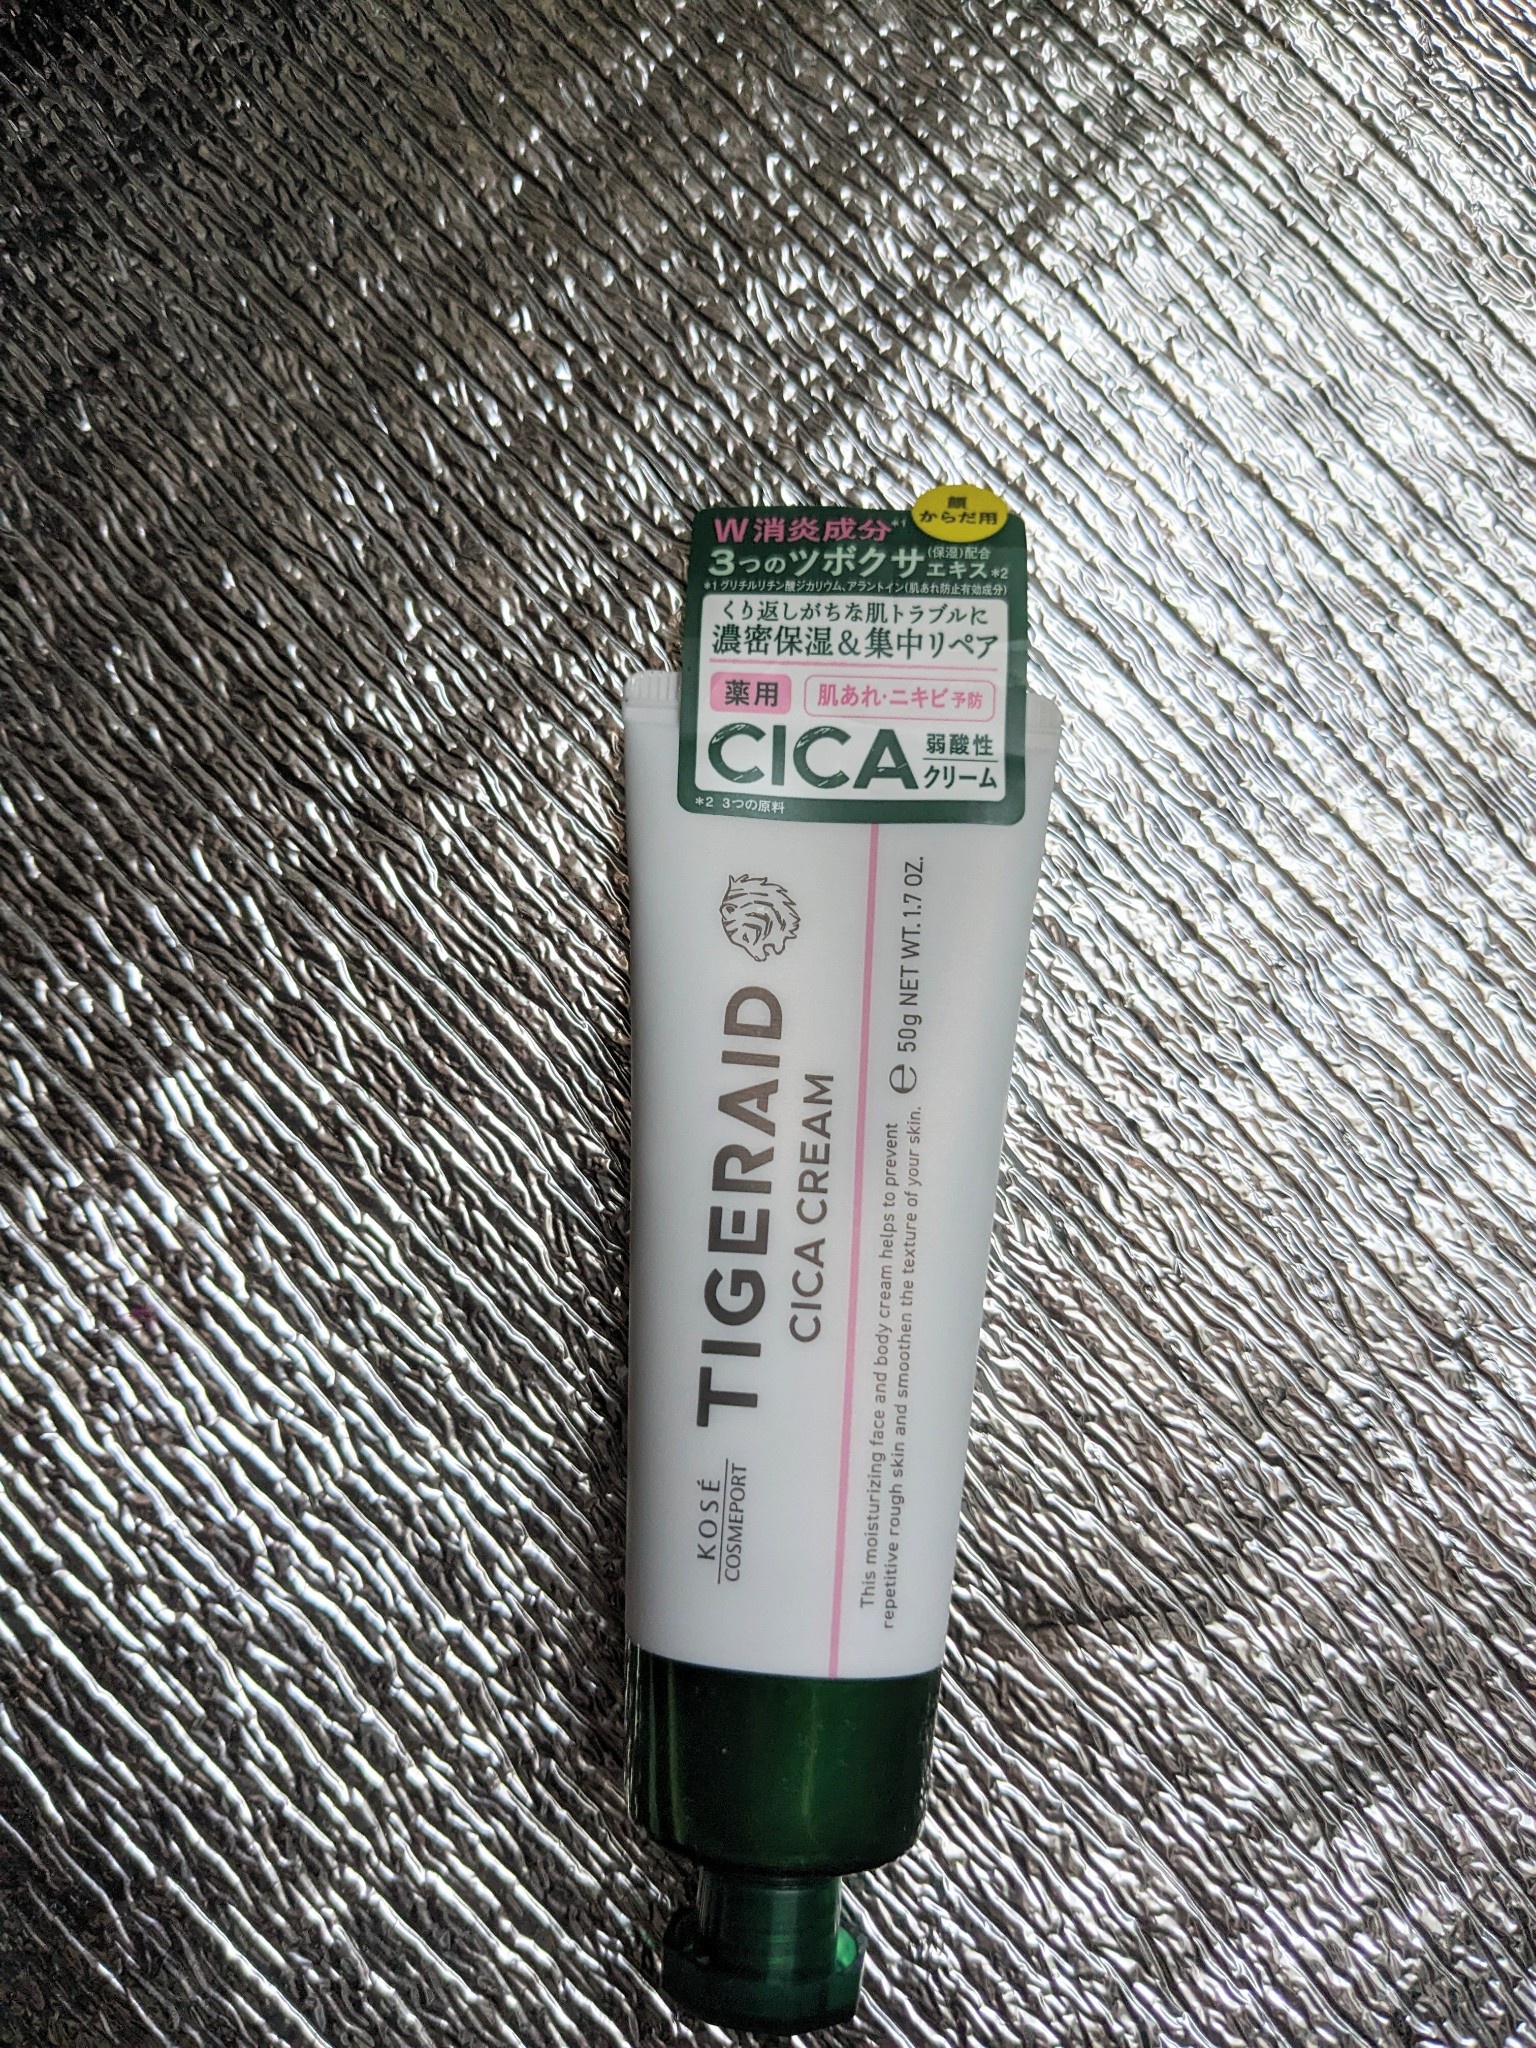 タイガレイド / タイガレイド 薬用CICAリペア クリームの公式商品情報